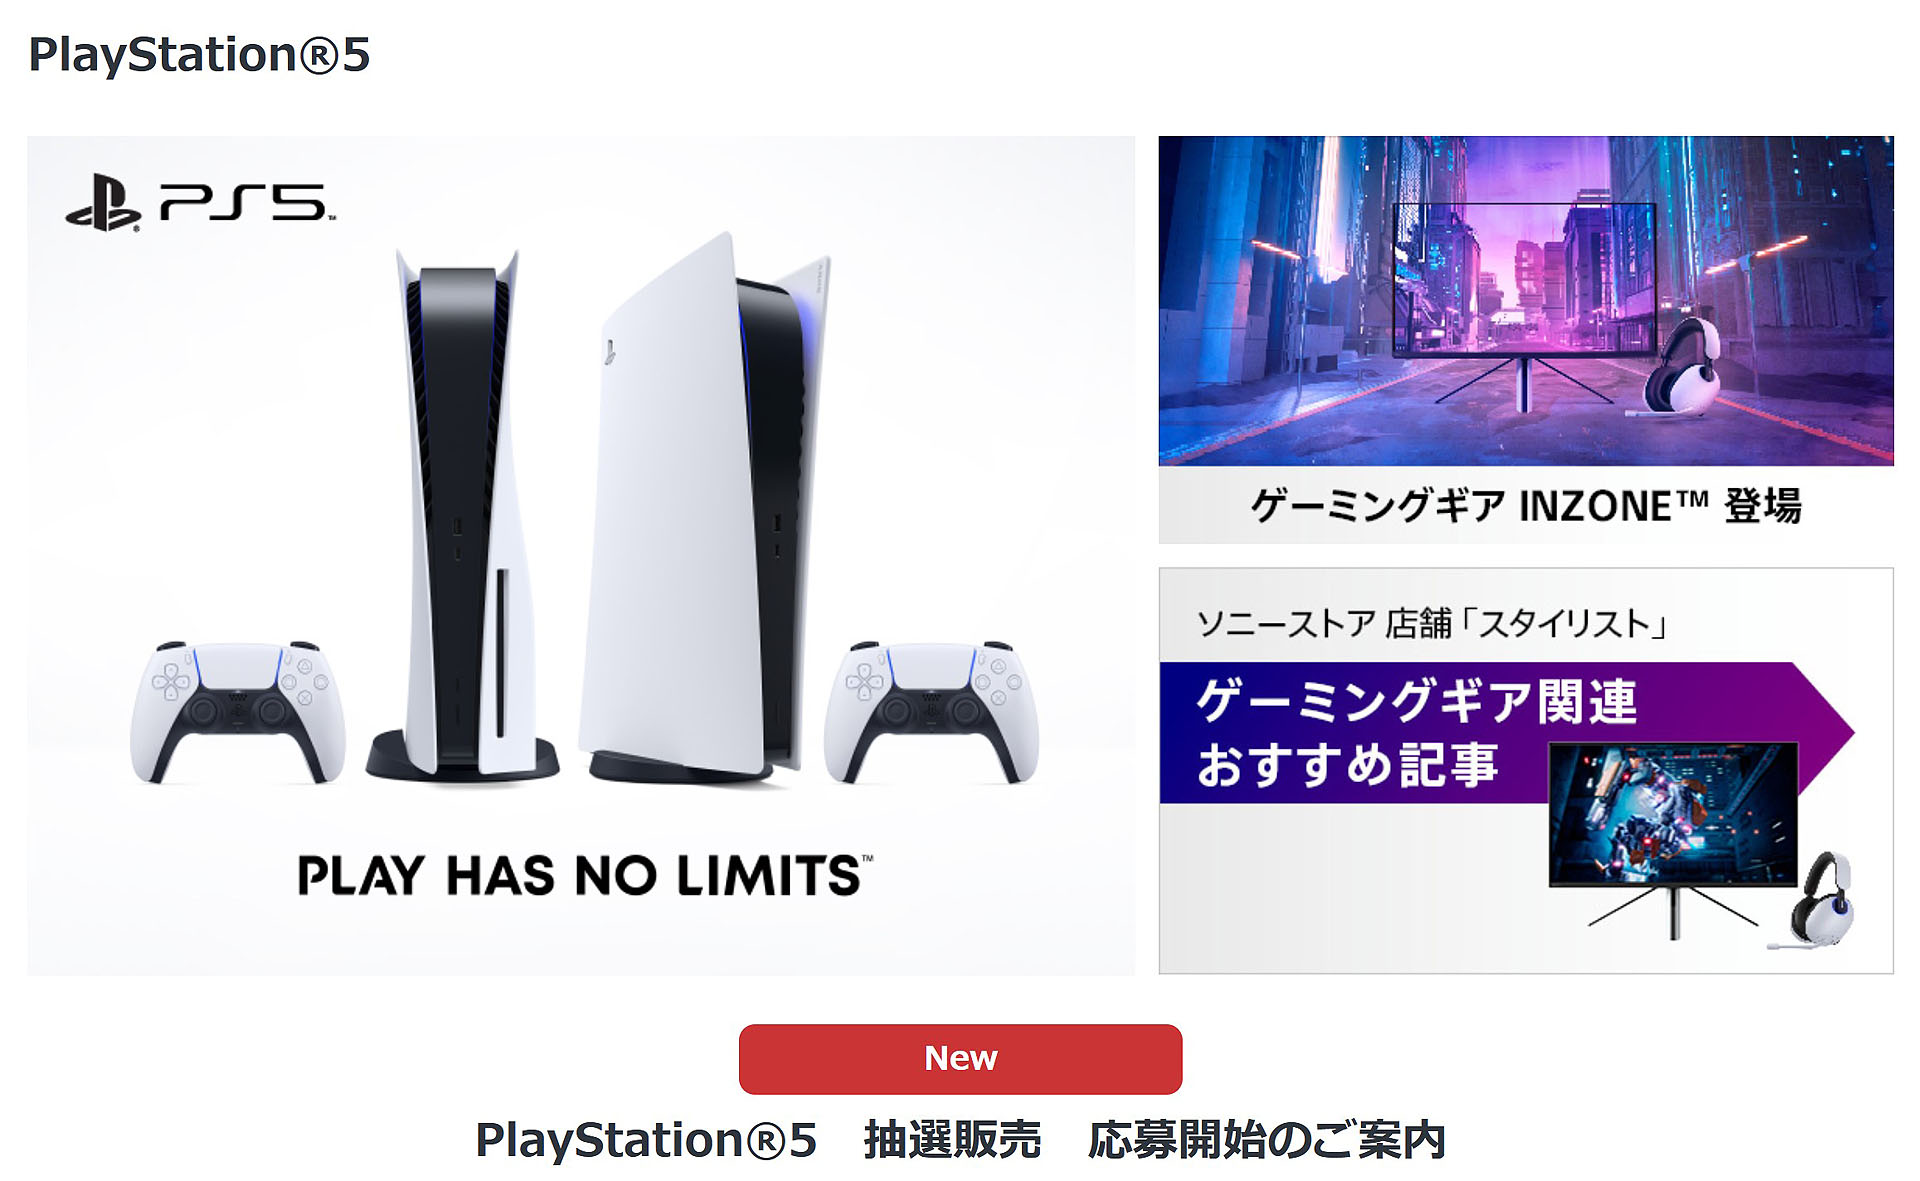 ソニーストアにて『PlayStation 5 抽選販売』の応募開始！ 申し込み期間は11月21日(月)午前11時まで！ 『INZONE M9』は22,000円(税込)OFFで購入可